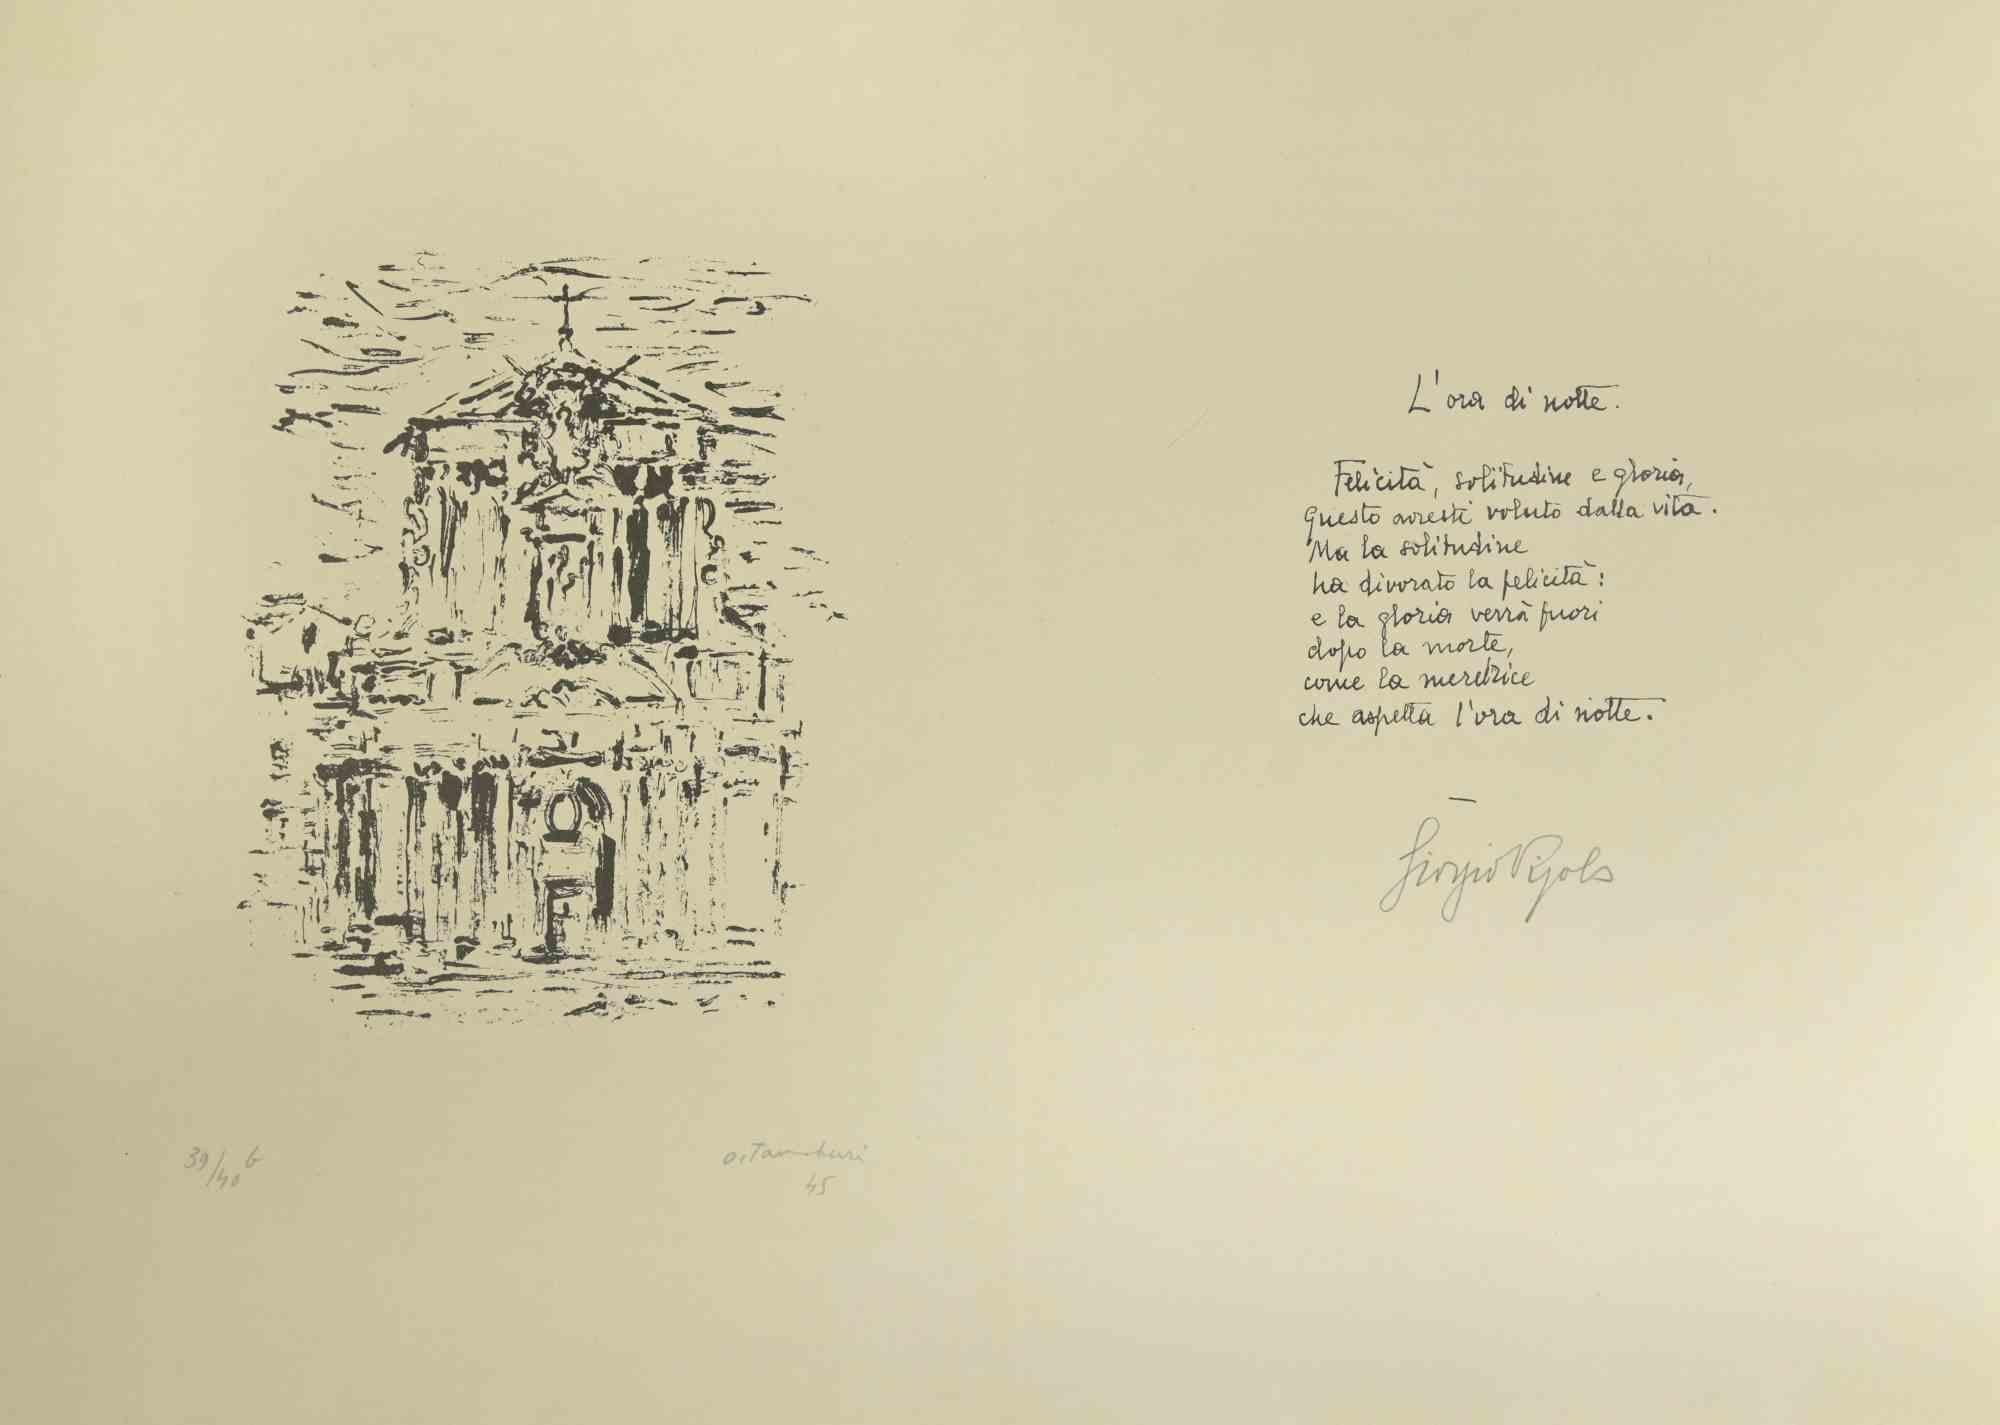 Night time est une œuvre d'art moderne réalisée par Orfeo Tamburi et Giorgio Vigolo en 1945.

Lithographie en noir et blanc. Les deux pages sont signées à la main au crayon et la page de gauche est datée de 1945.

La lithographie est numérotée, une